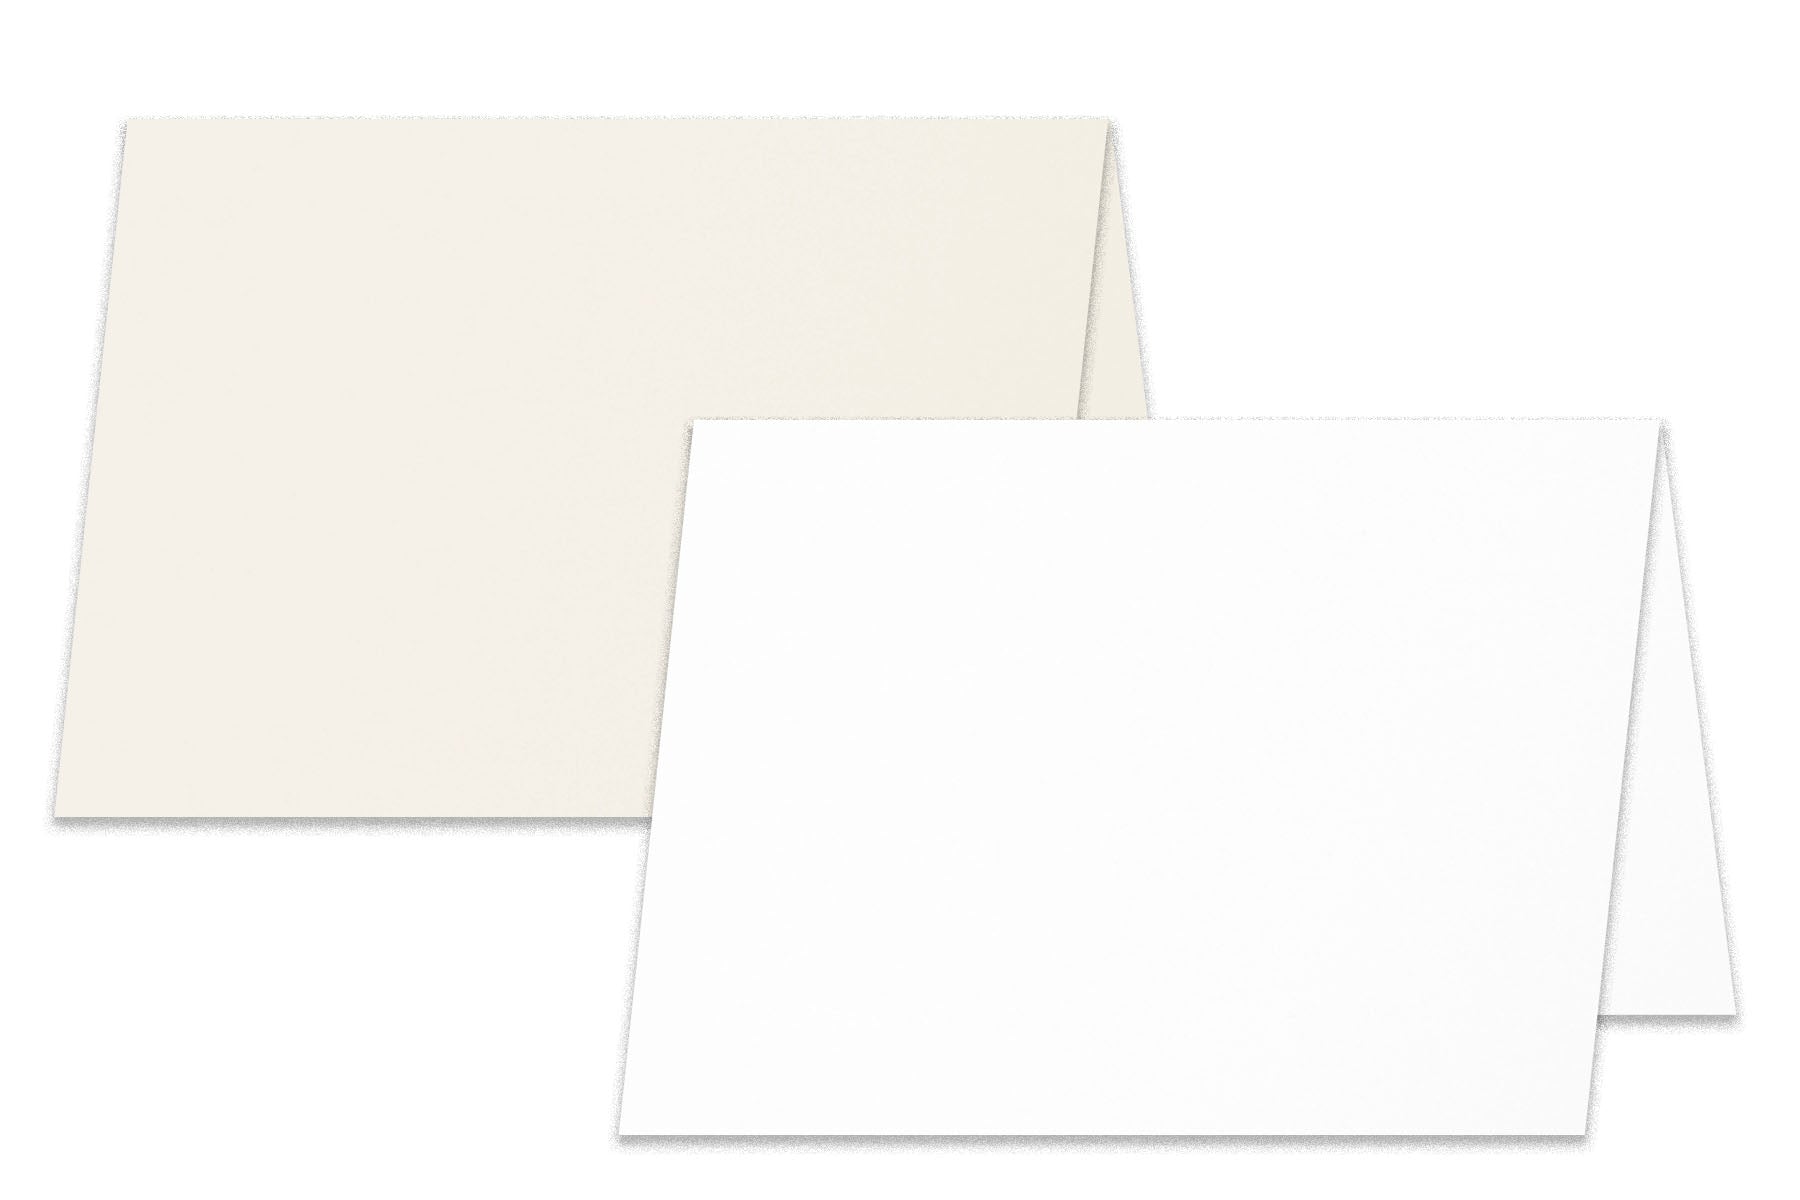 Premium Ivory Card Stock for DIY invitations, programs and menus -  CutCardStock